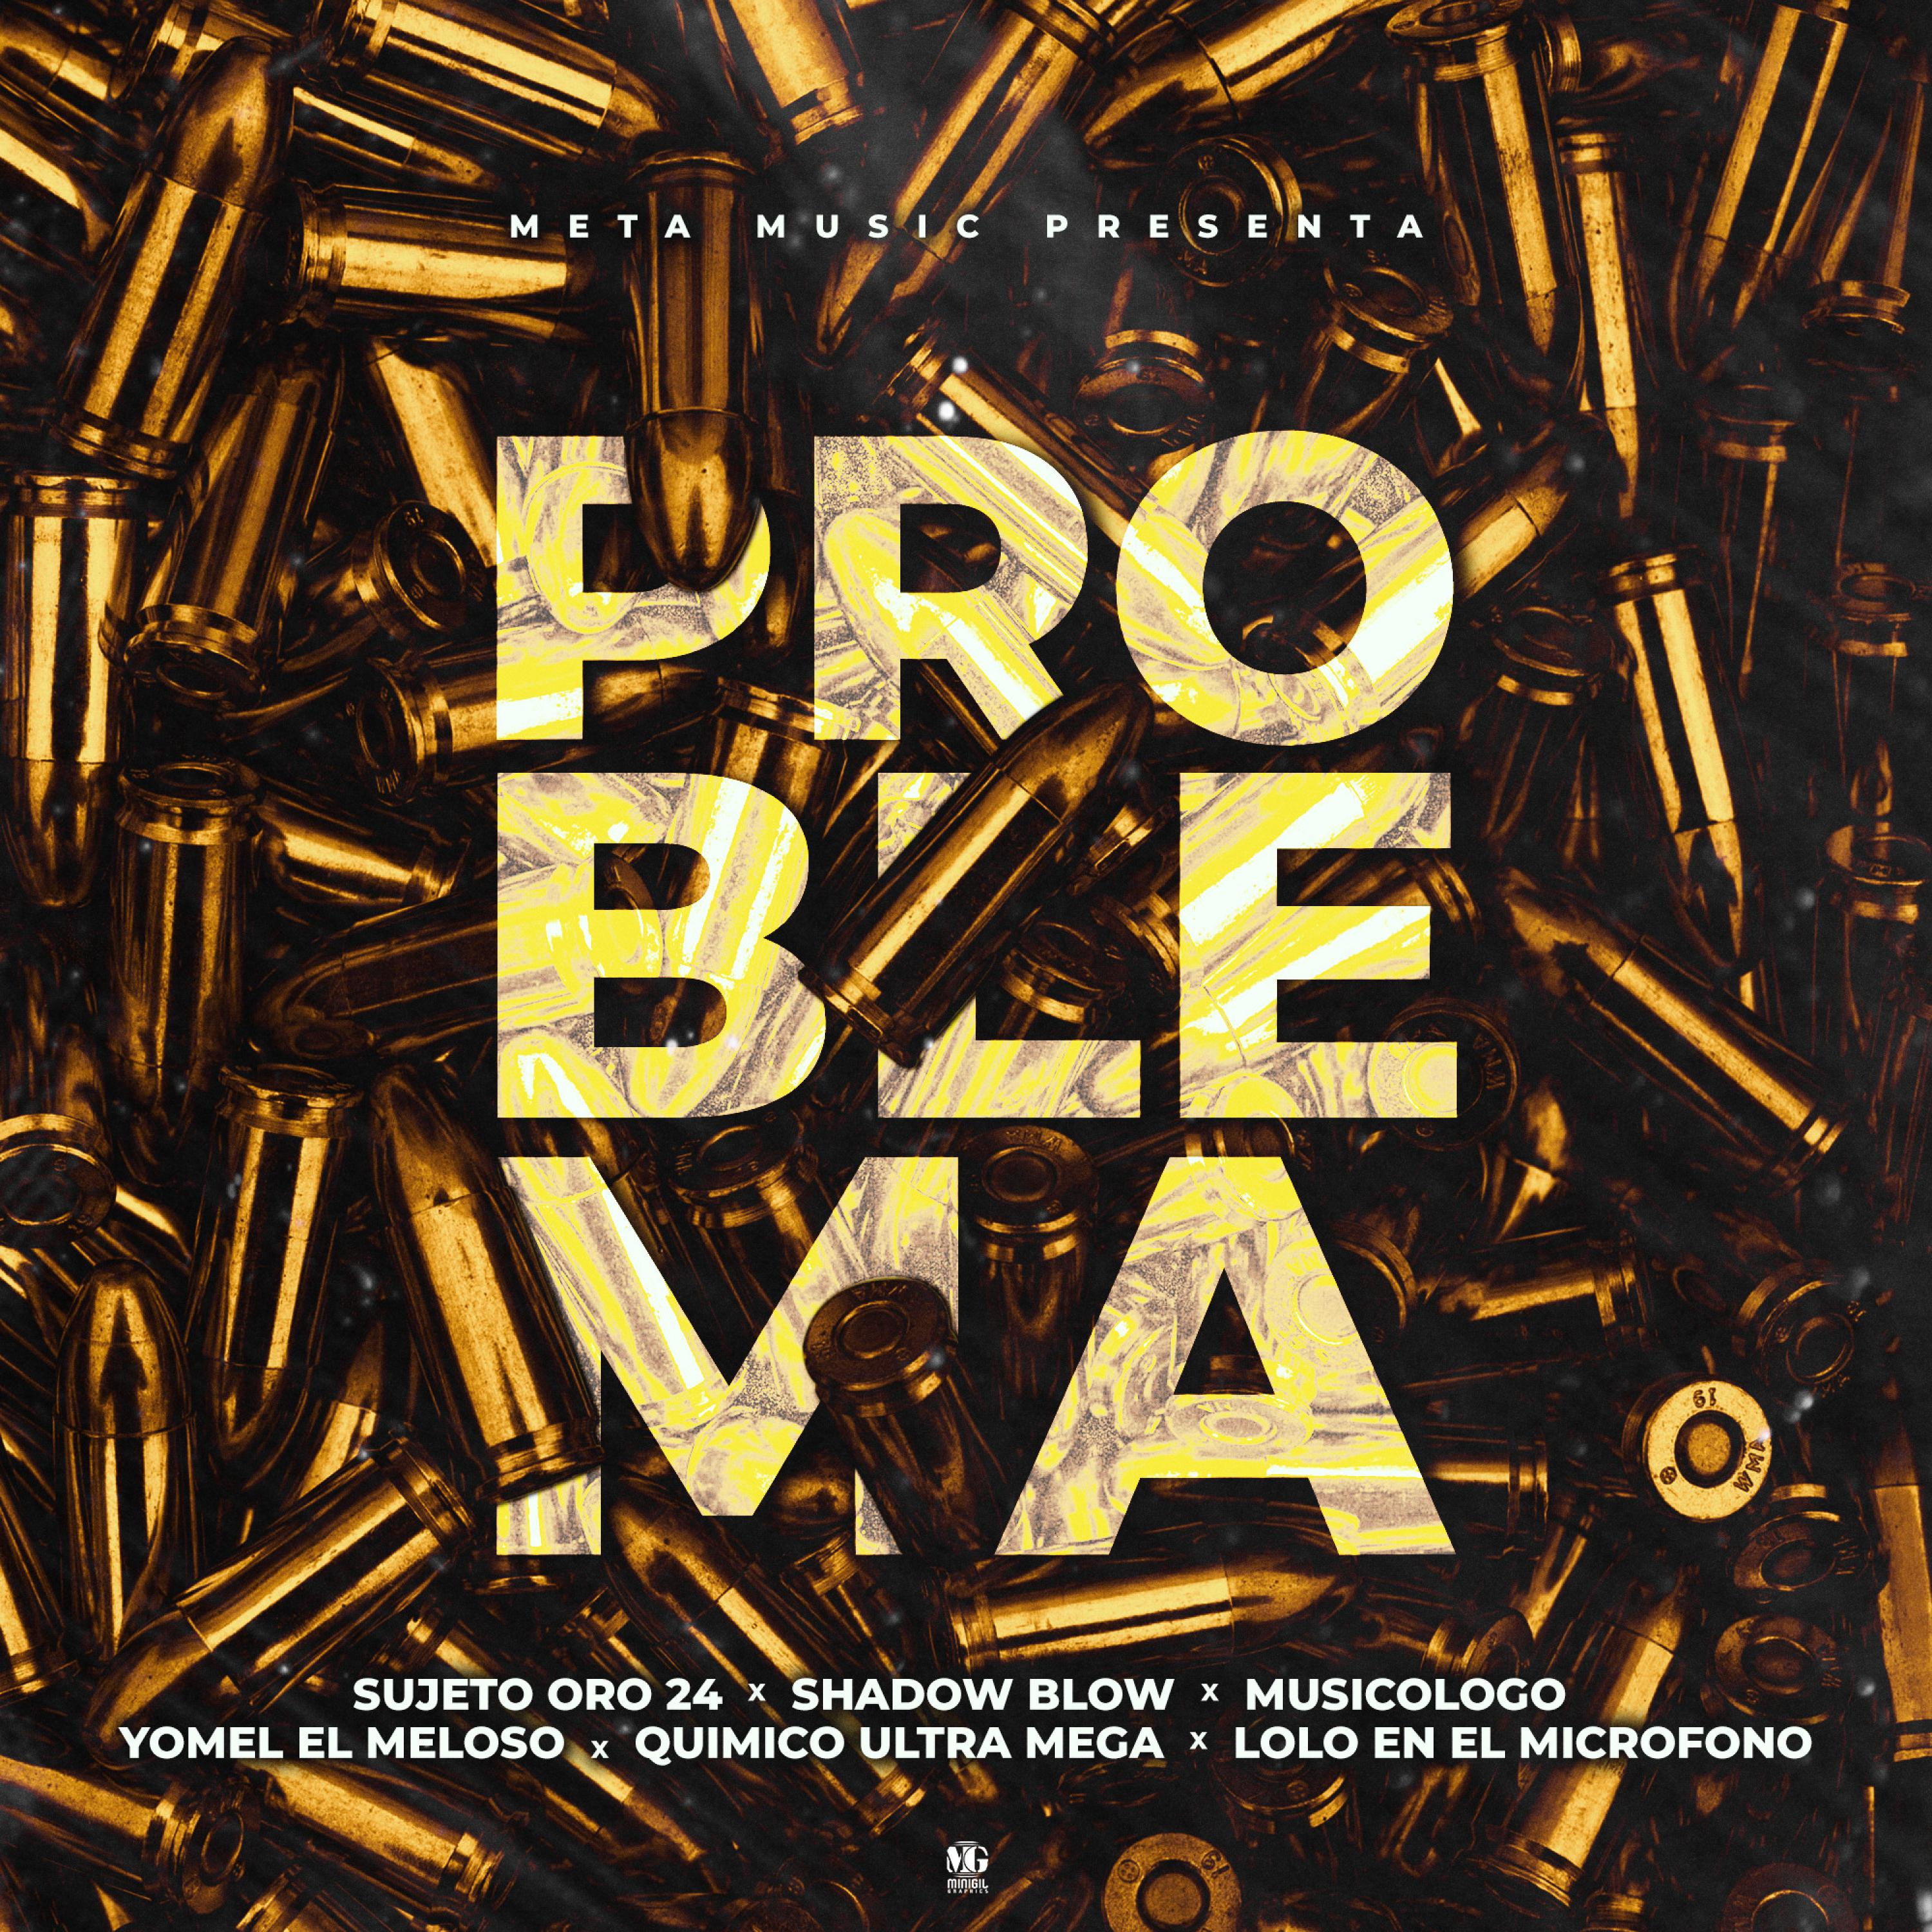 Sujeto Oro 24 - Problema (feat. Quimico Ultra Mega & Lolo en el Microfono)